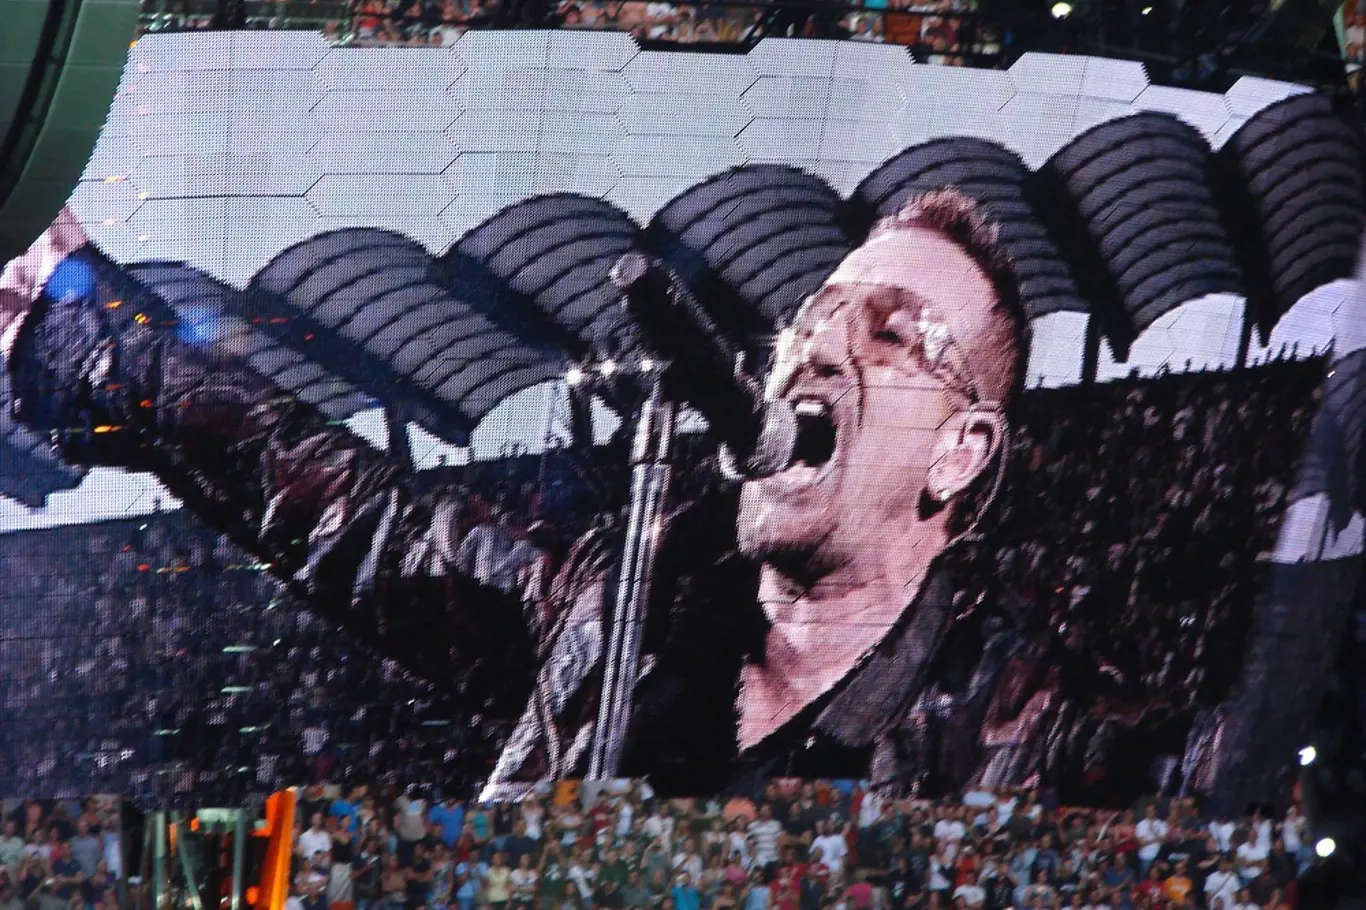 Podobizna zpěváka Bono Voxe na koncertě skupiny U2 v italském Miláně letos v červenci.